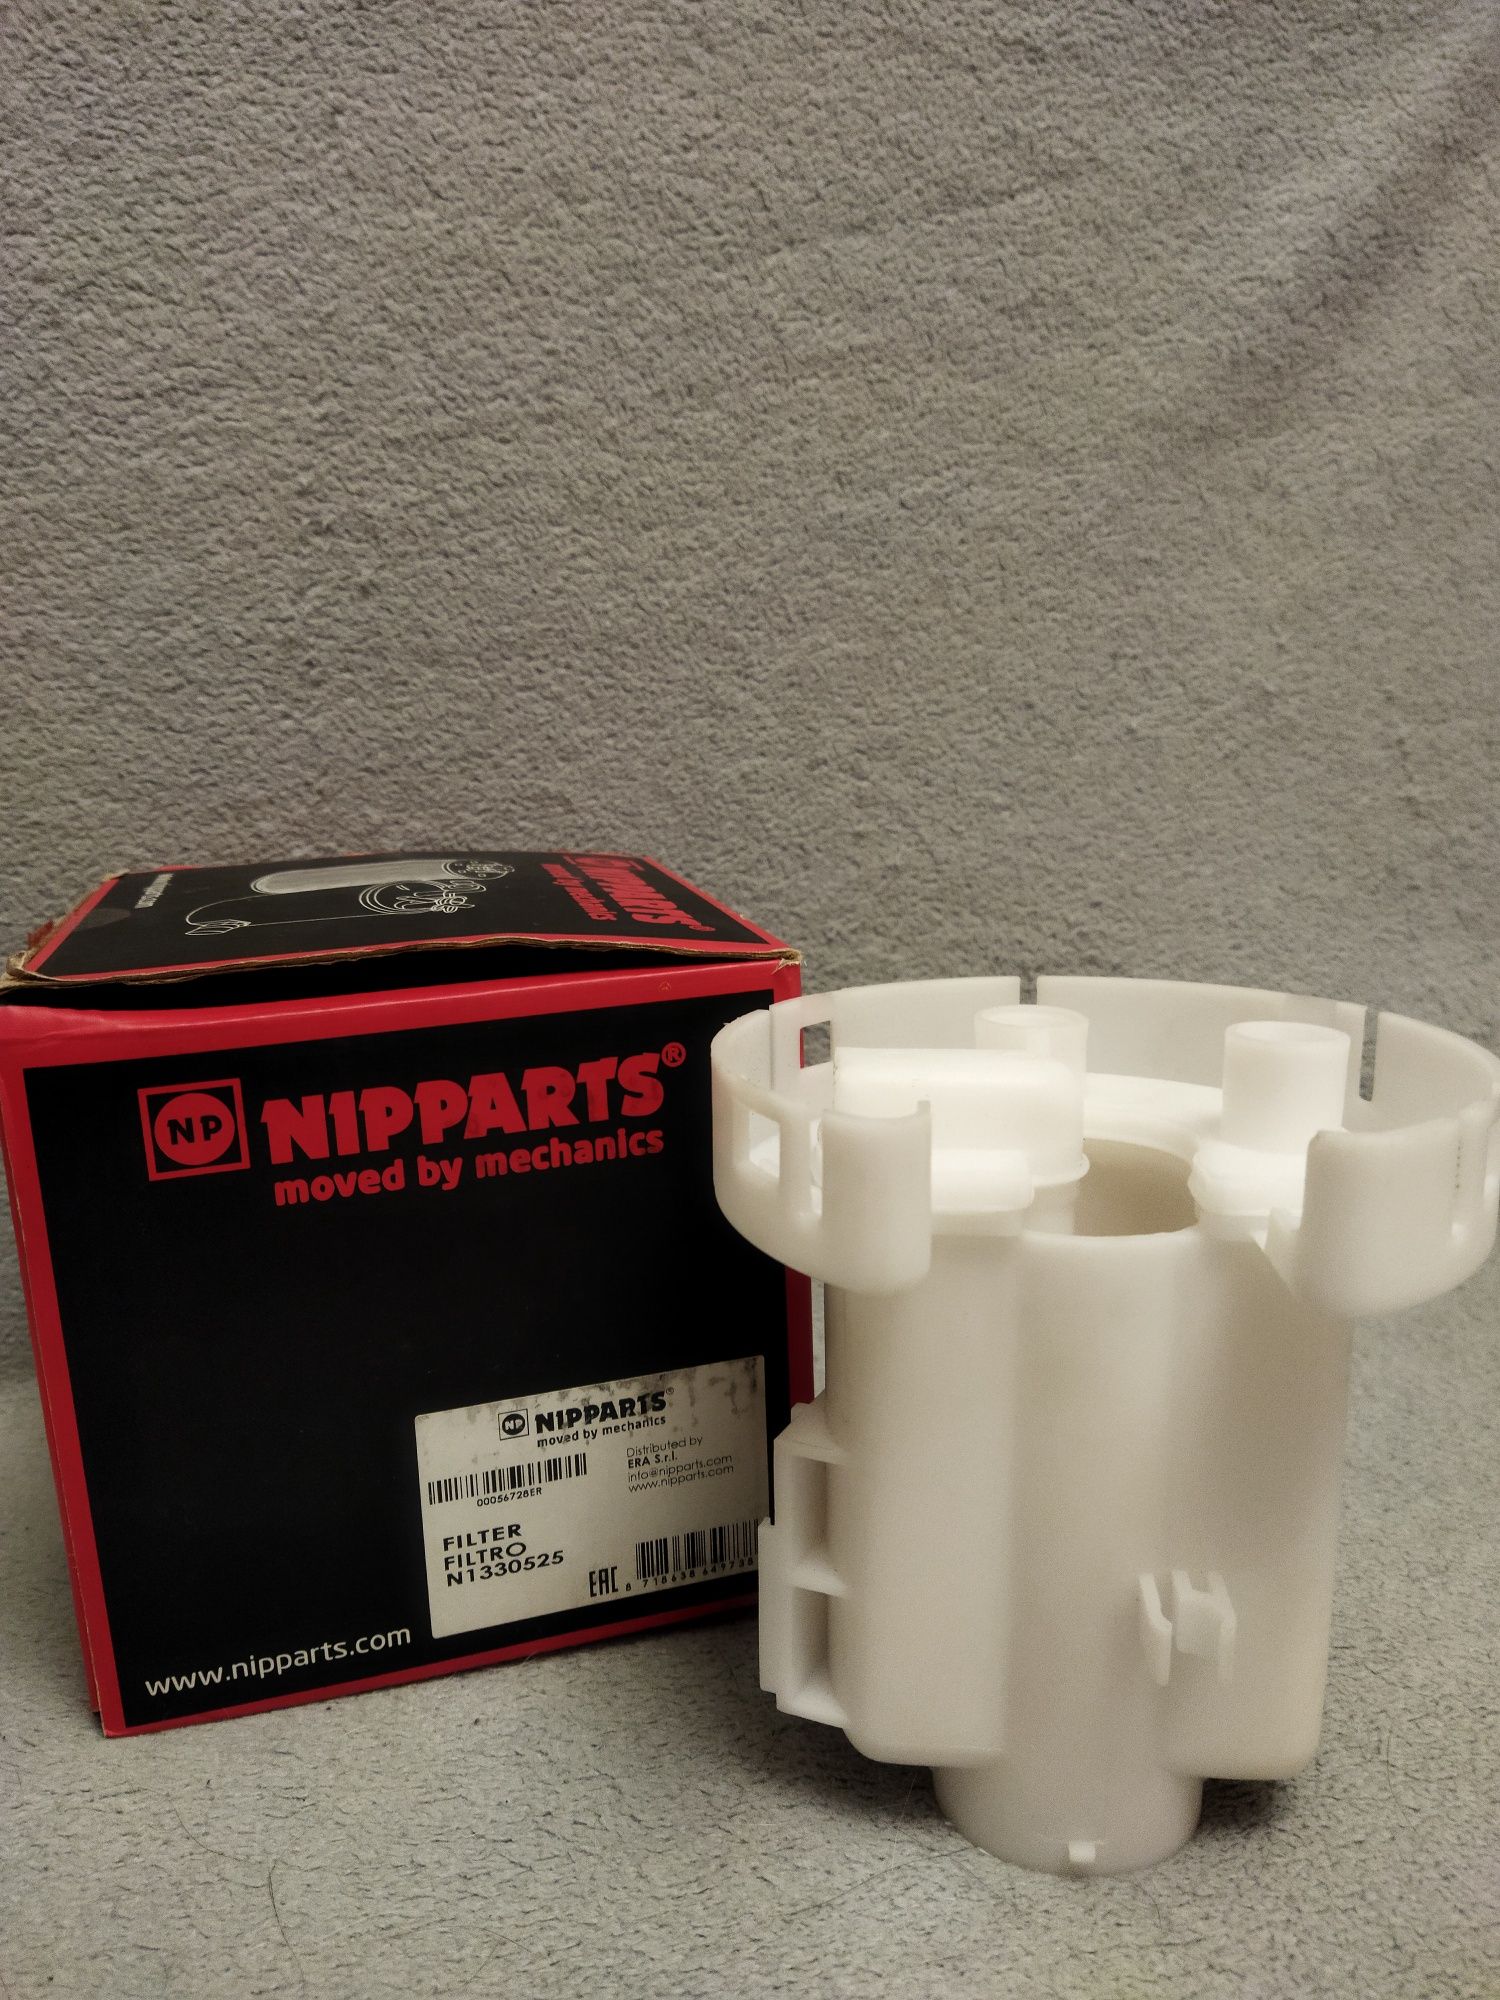 Топливный фильтр Nipparts N1330525 (на Hyundai Accent)